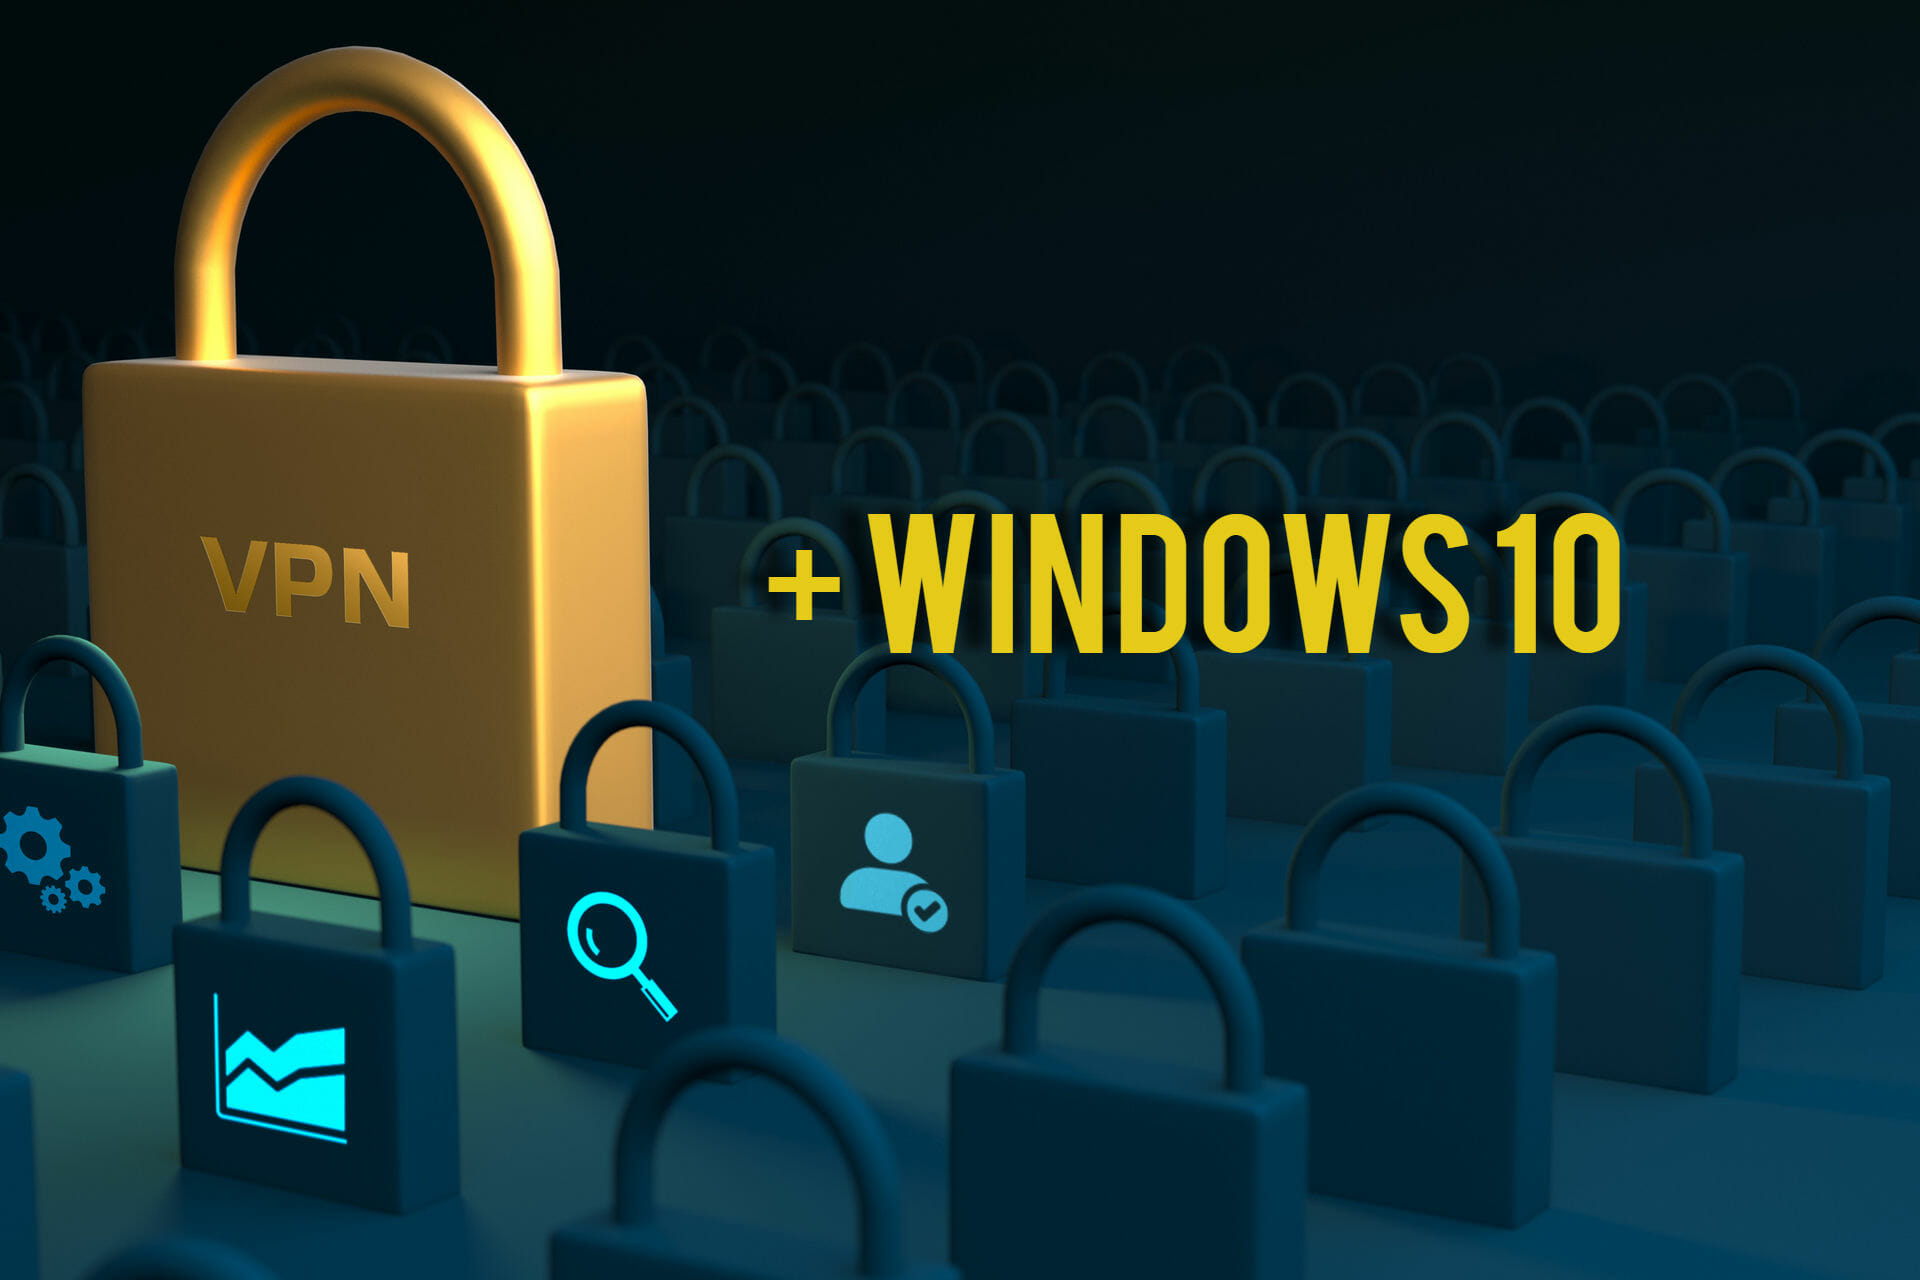 connexion VPN avant ouverture session Windows 10